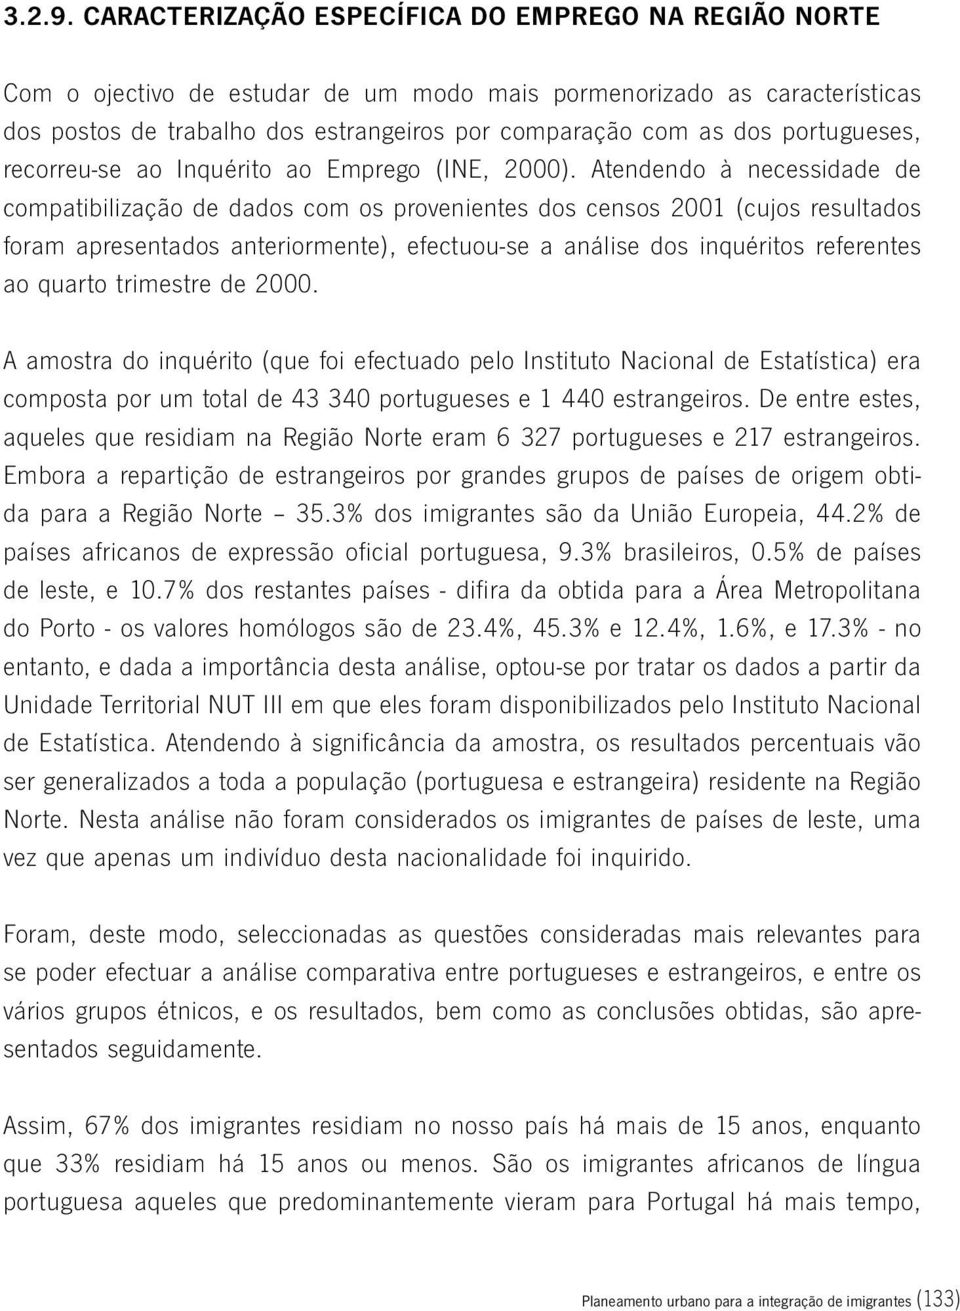 portugueses, recorreu-se ao Inquérito ao Emprego (INE, 2000).